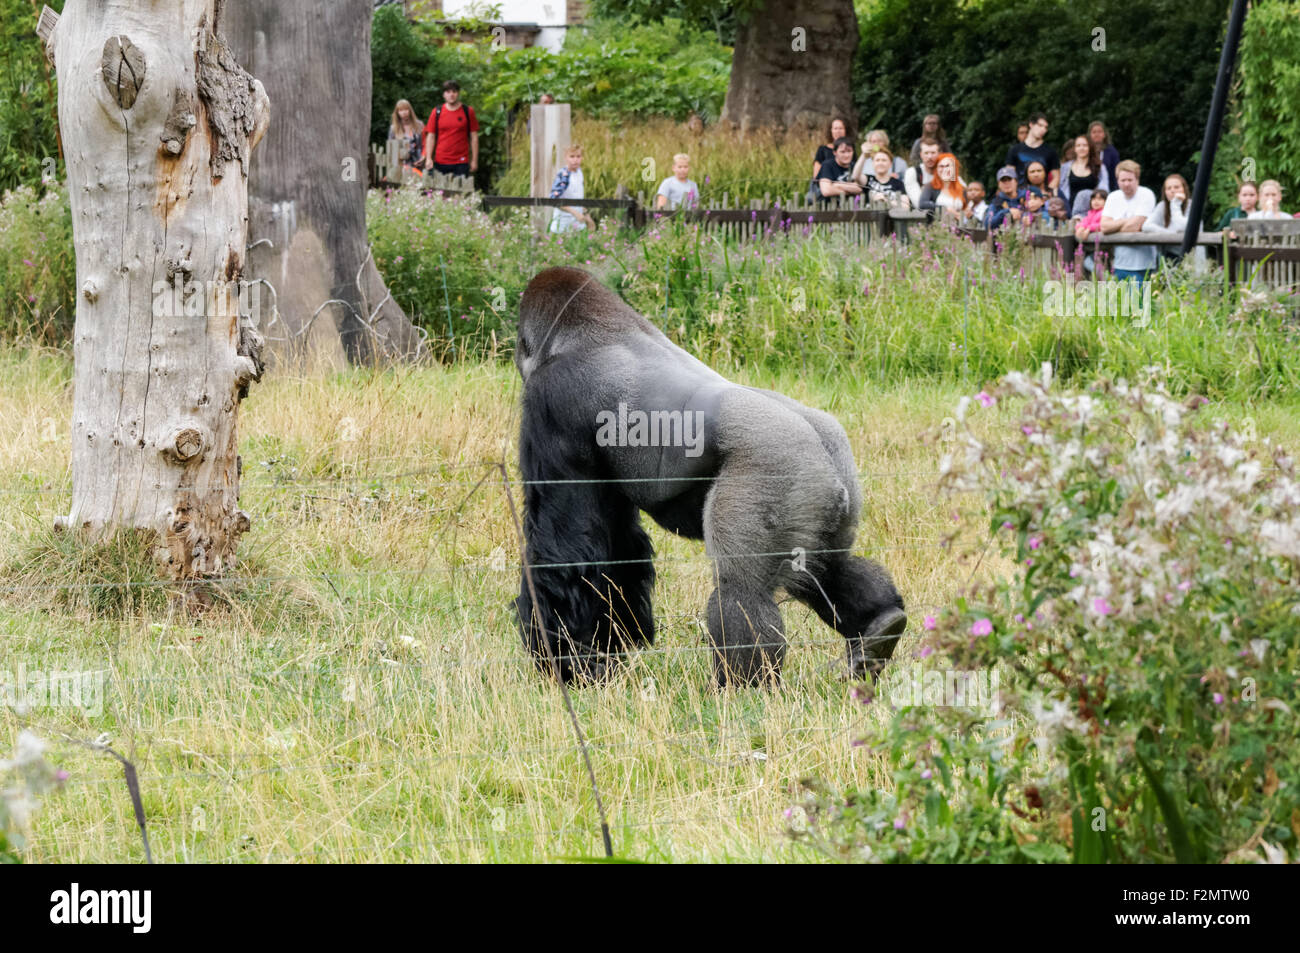 El gorila de las tierras bajas occidentales (Gorilla gorilla gorilla) en el ZSL Zoo de Londres, Londres, Inglaterra, Reino Unido Foto de stock